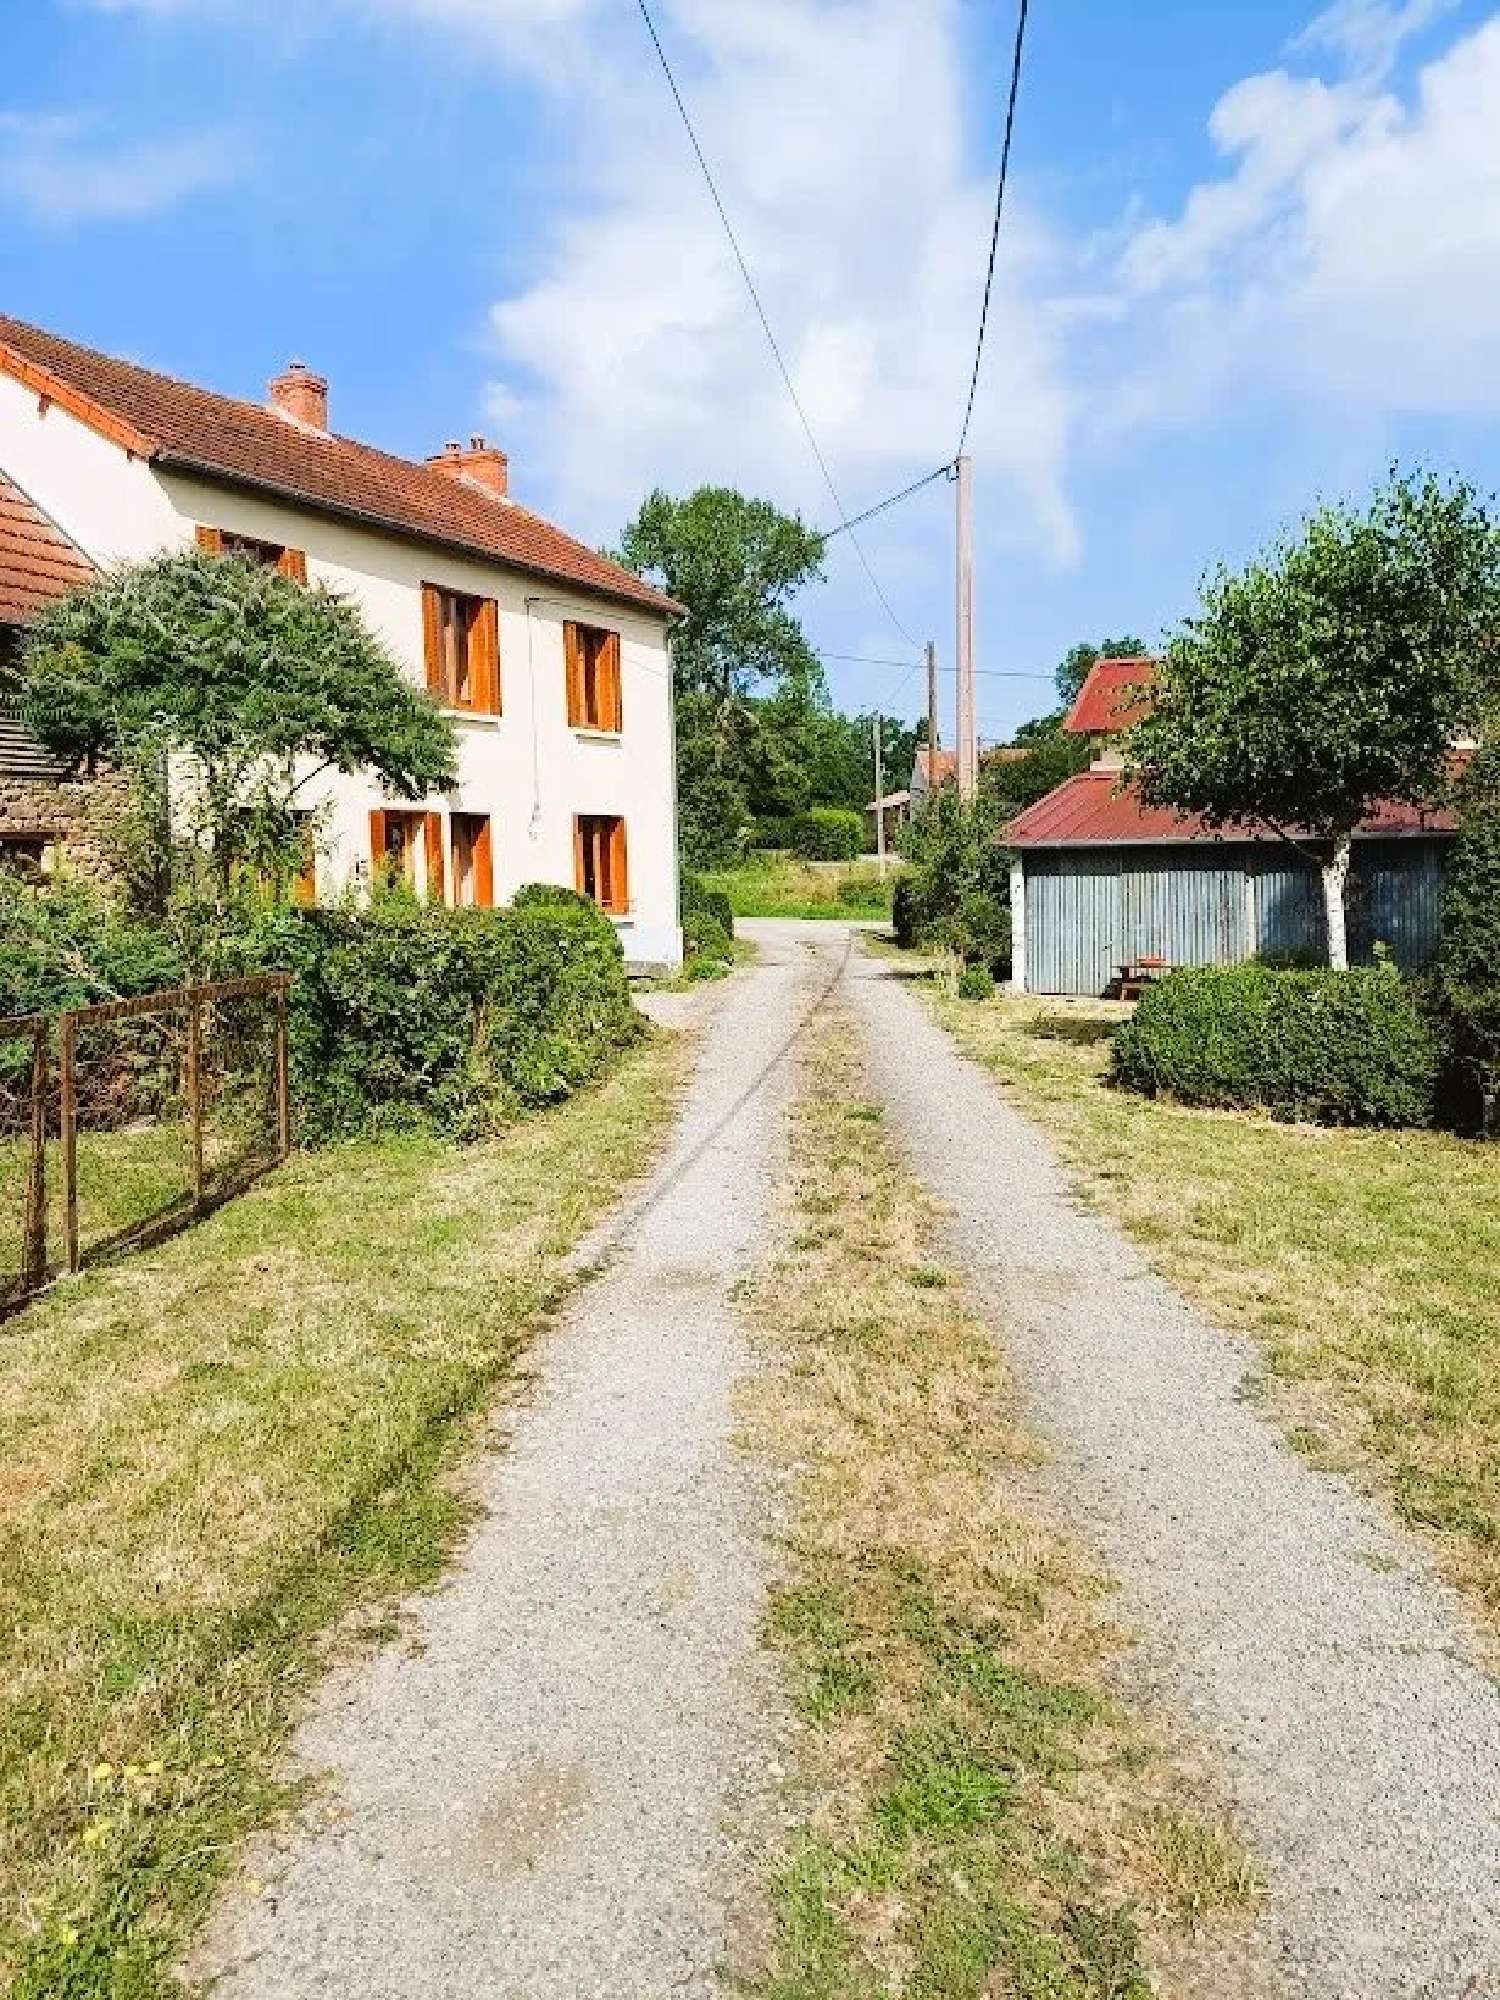 house for sale Gouzon, Creuse ( Nouvelle-Aquitaine) picture 2